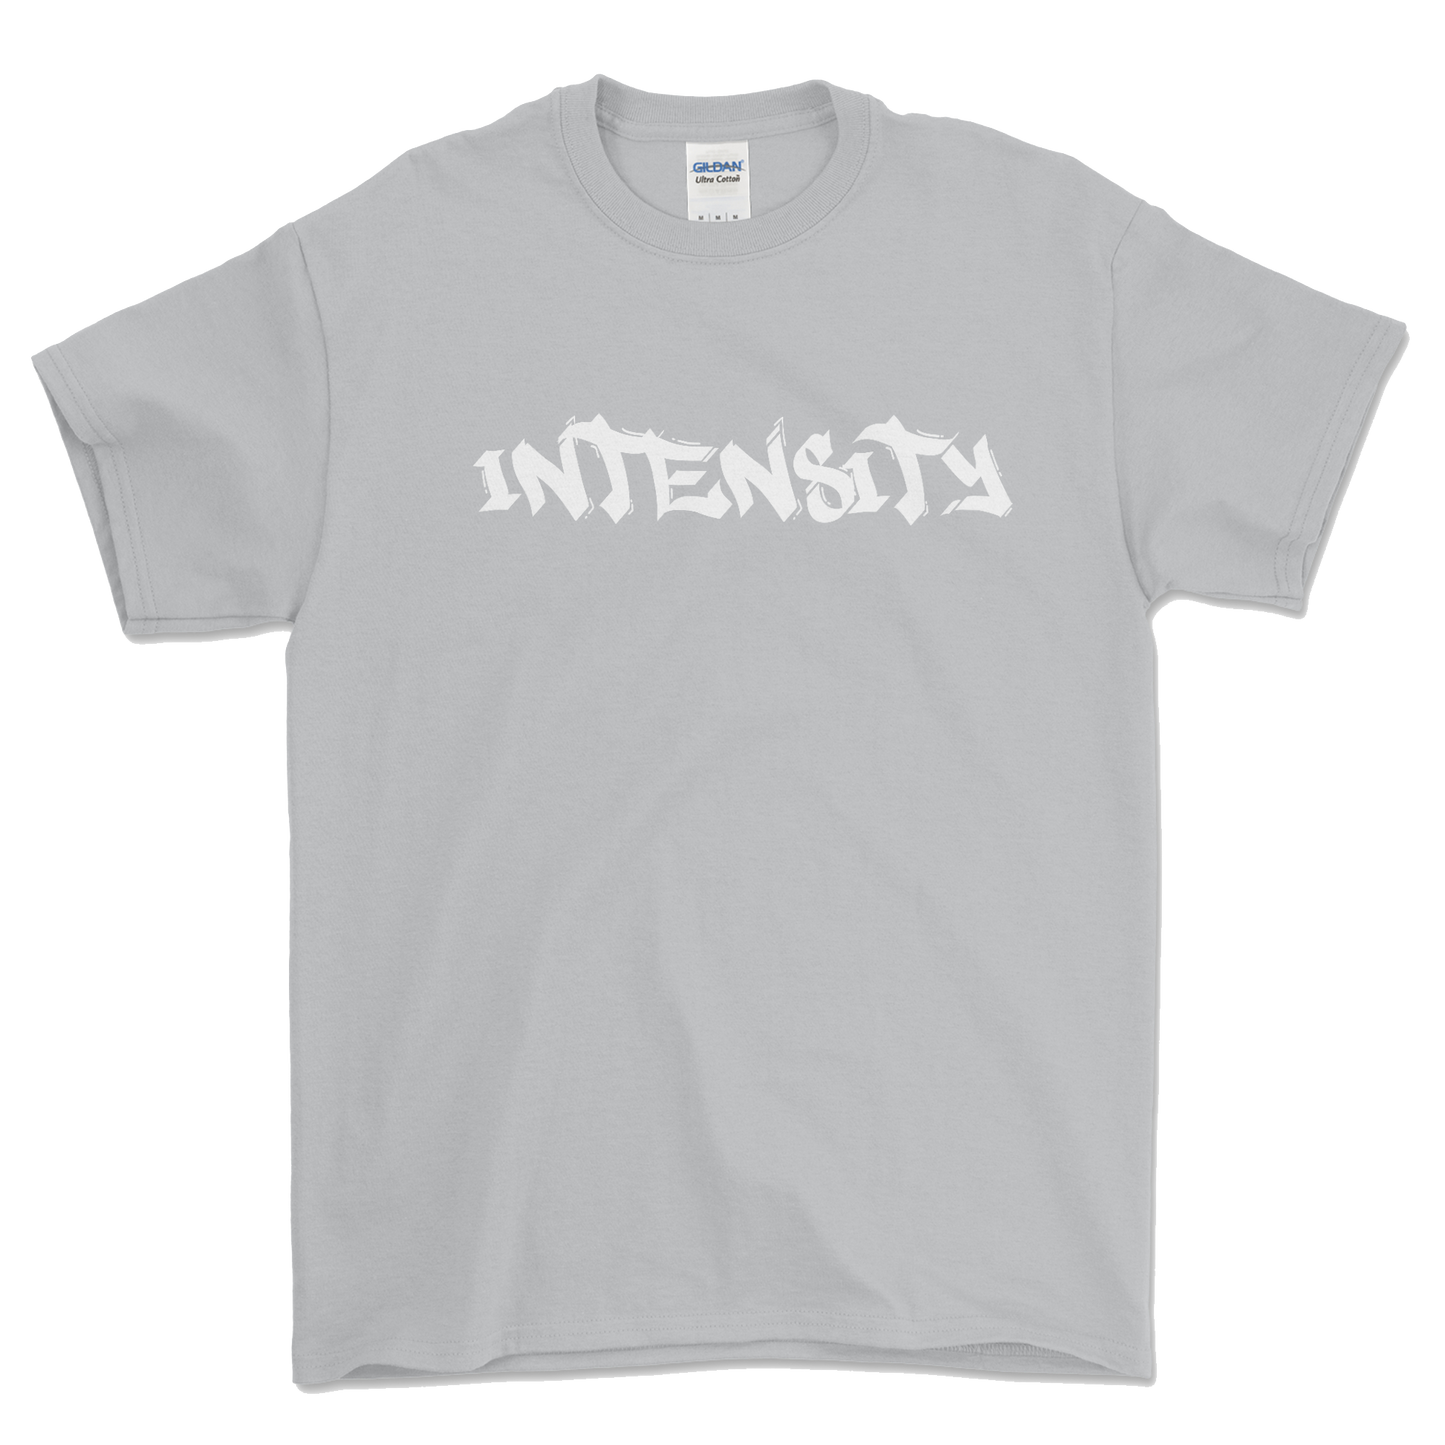 Men's "INTENSITY" Solid Grey T-Shirt